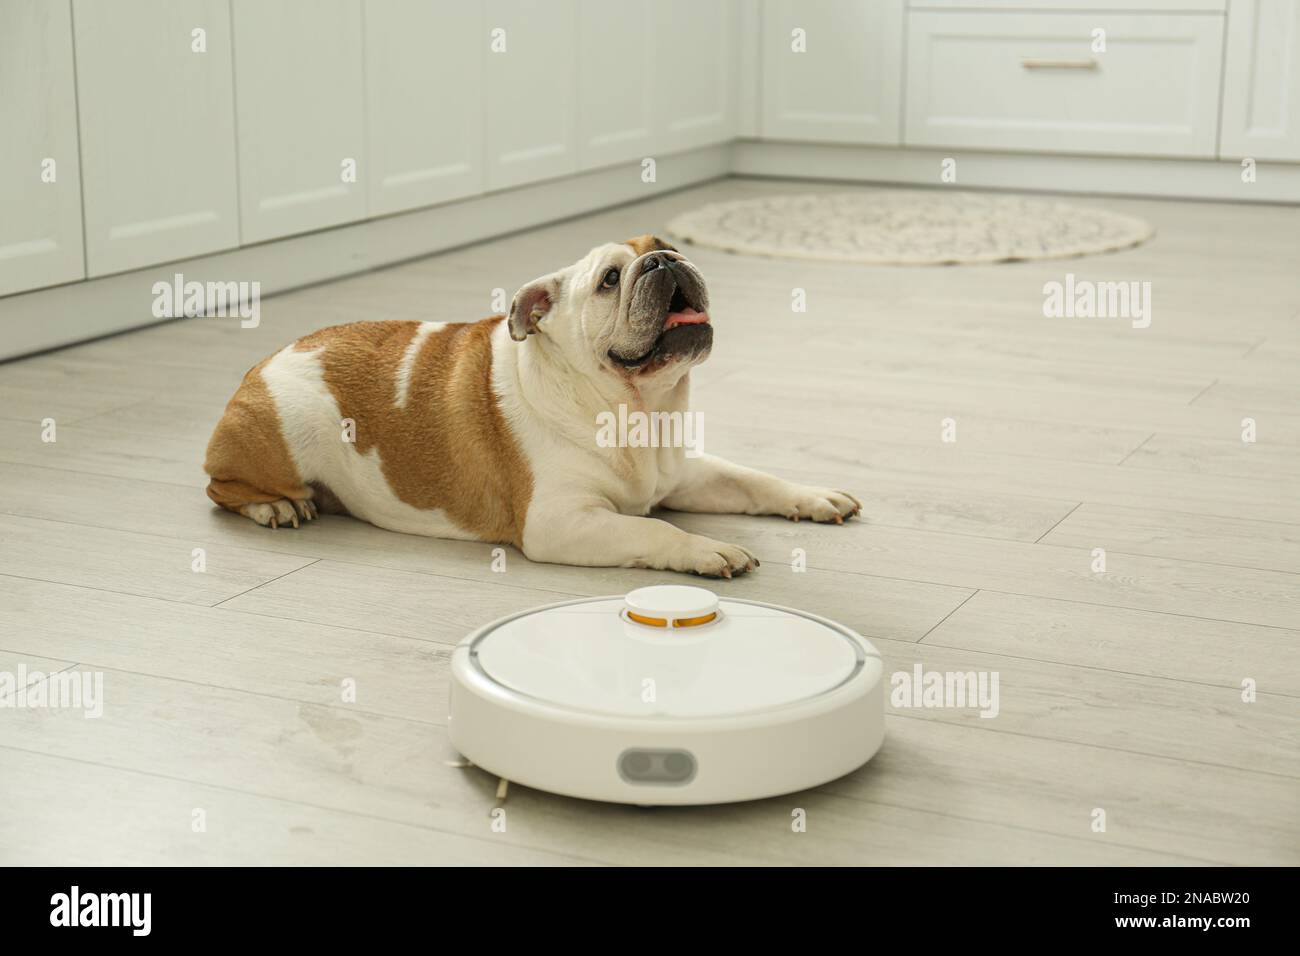 Aspirateur robotique et adorable chien au sol dans la cuisine Photo Stock -  Alamy